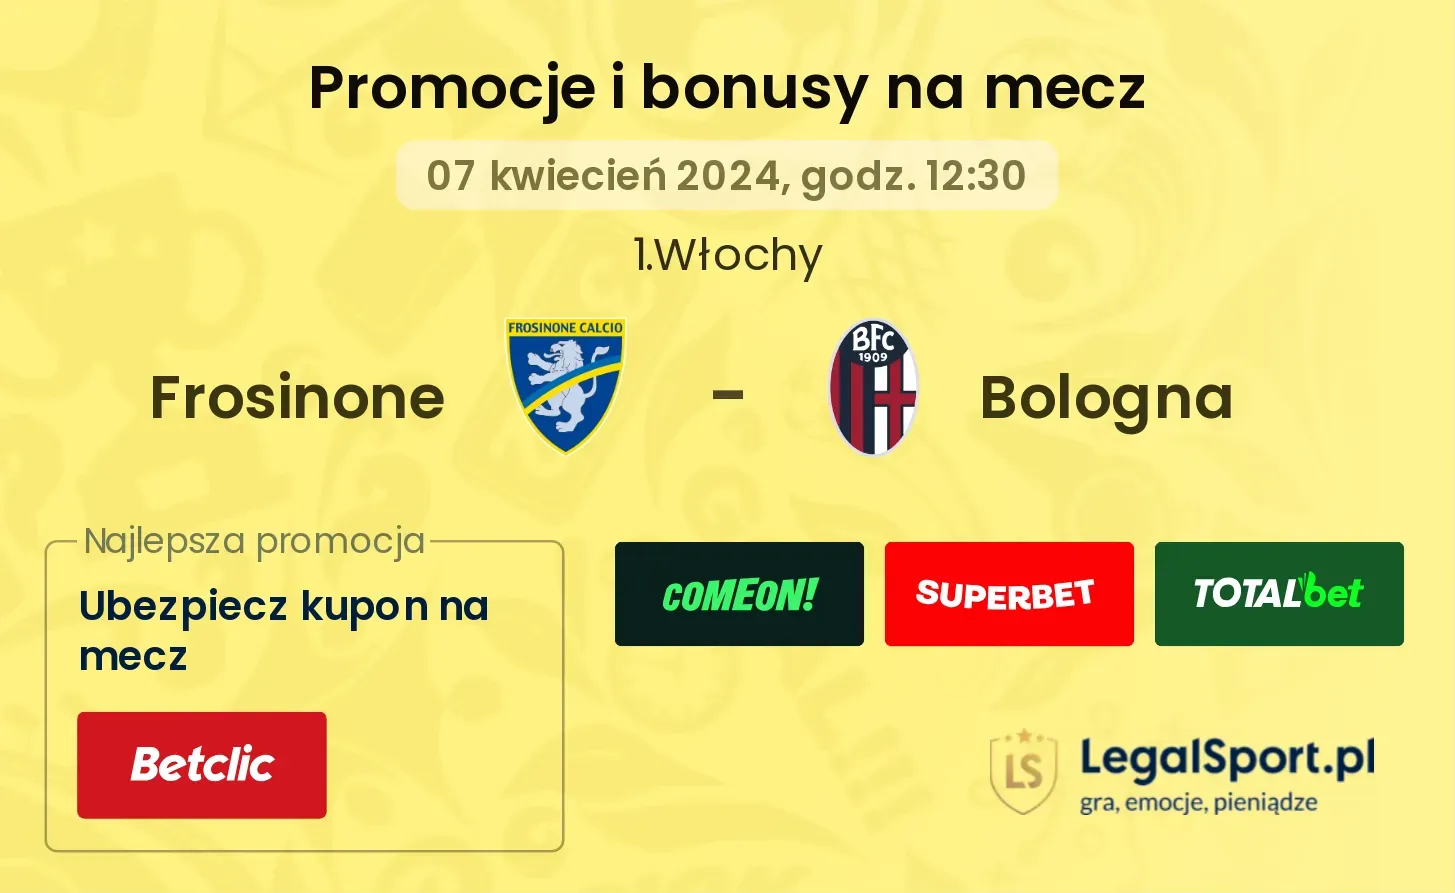 Frosinone - Bologna promocje bonusy na mecz